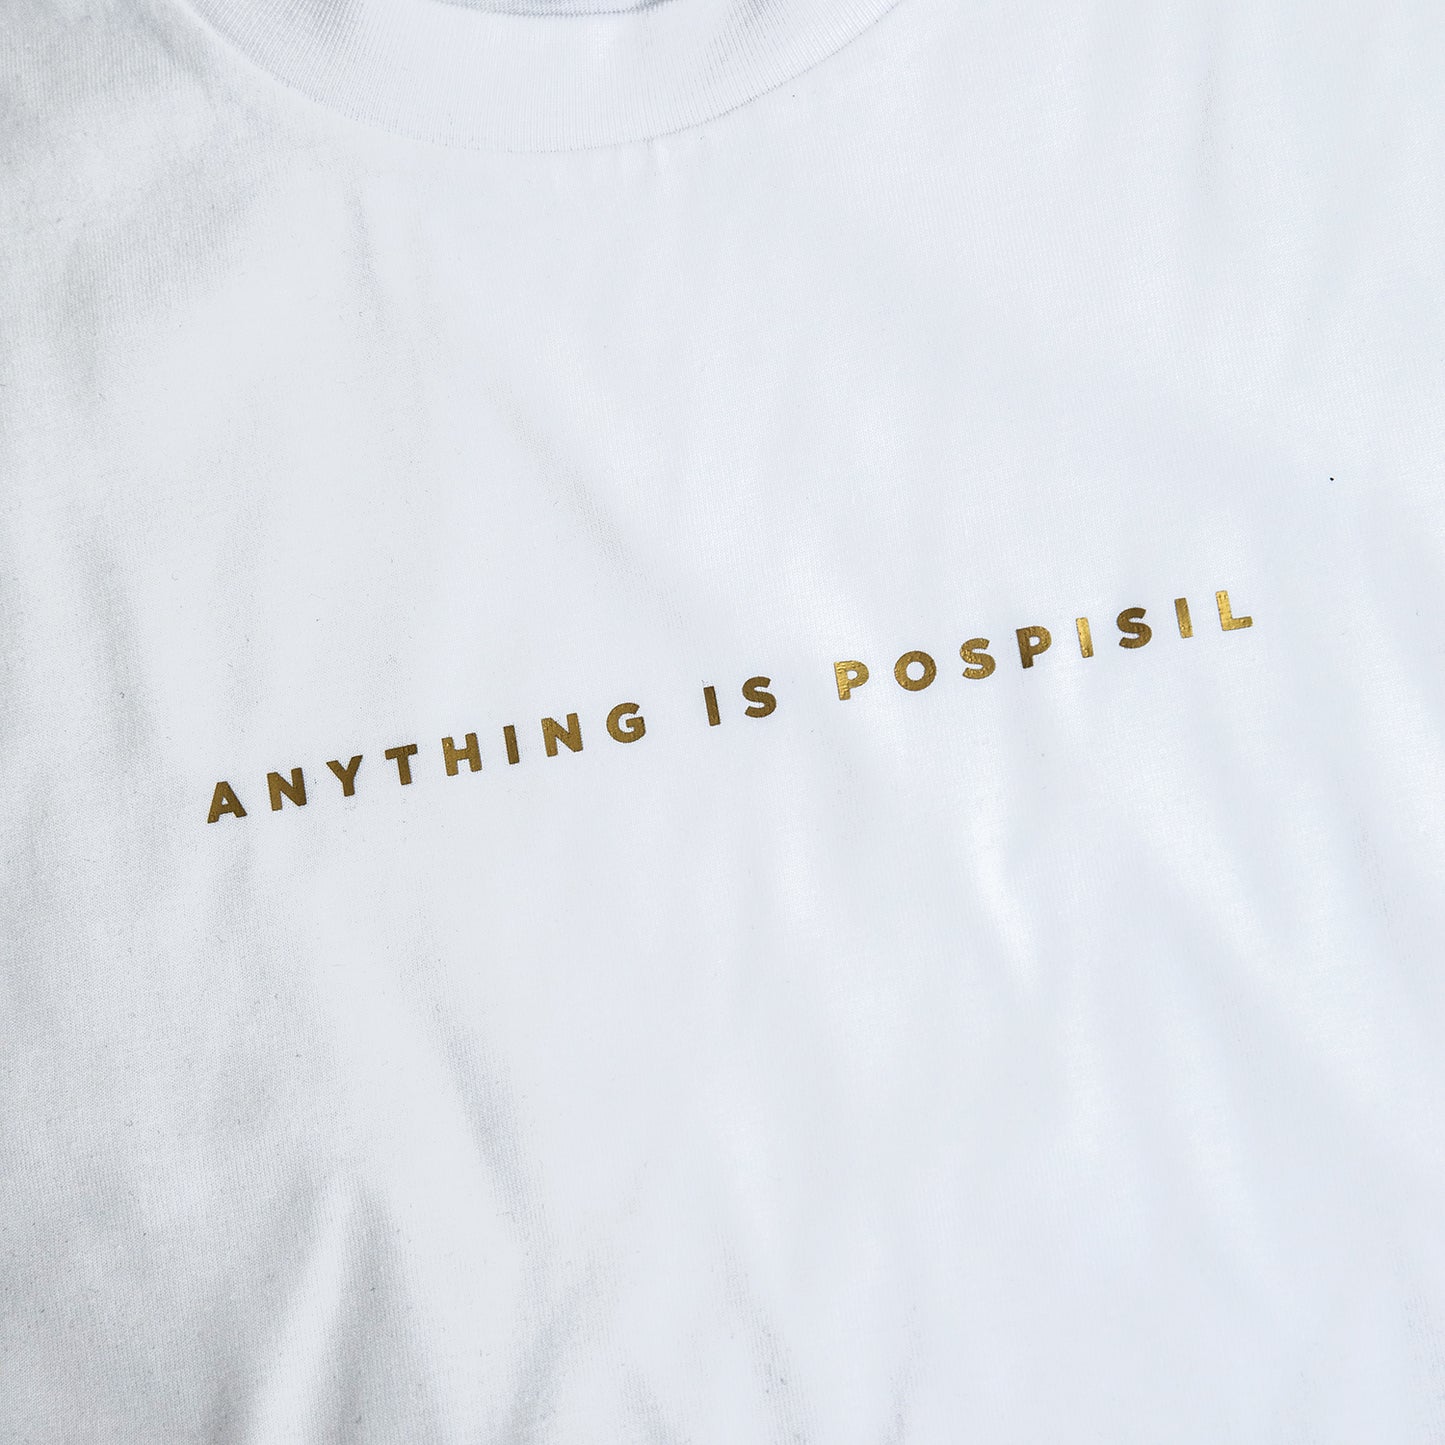 VP Minimal "Anything is Pospisil" Shirt - White